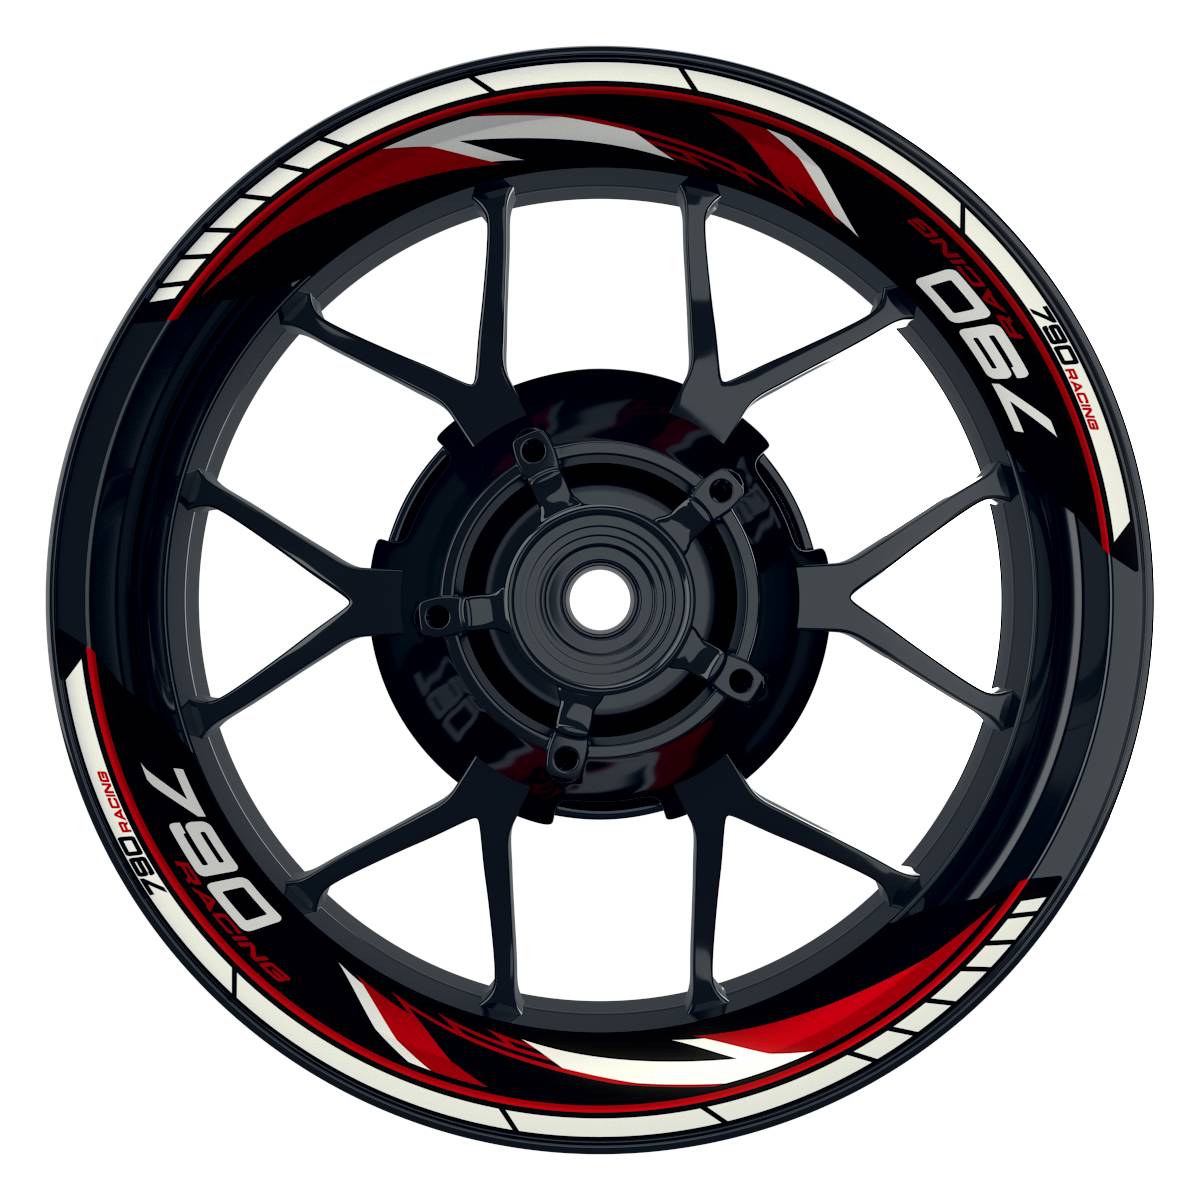 KTM Racing 790 Razor schwarz rot Frontansicht